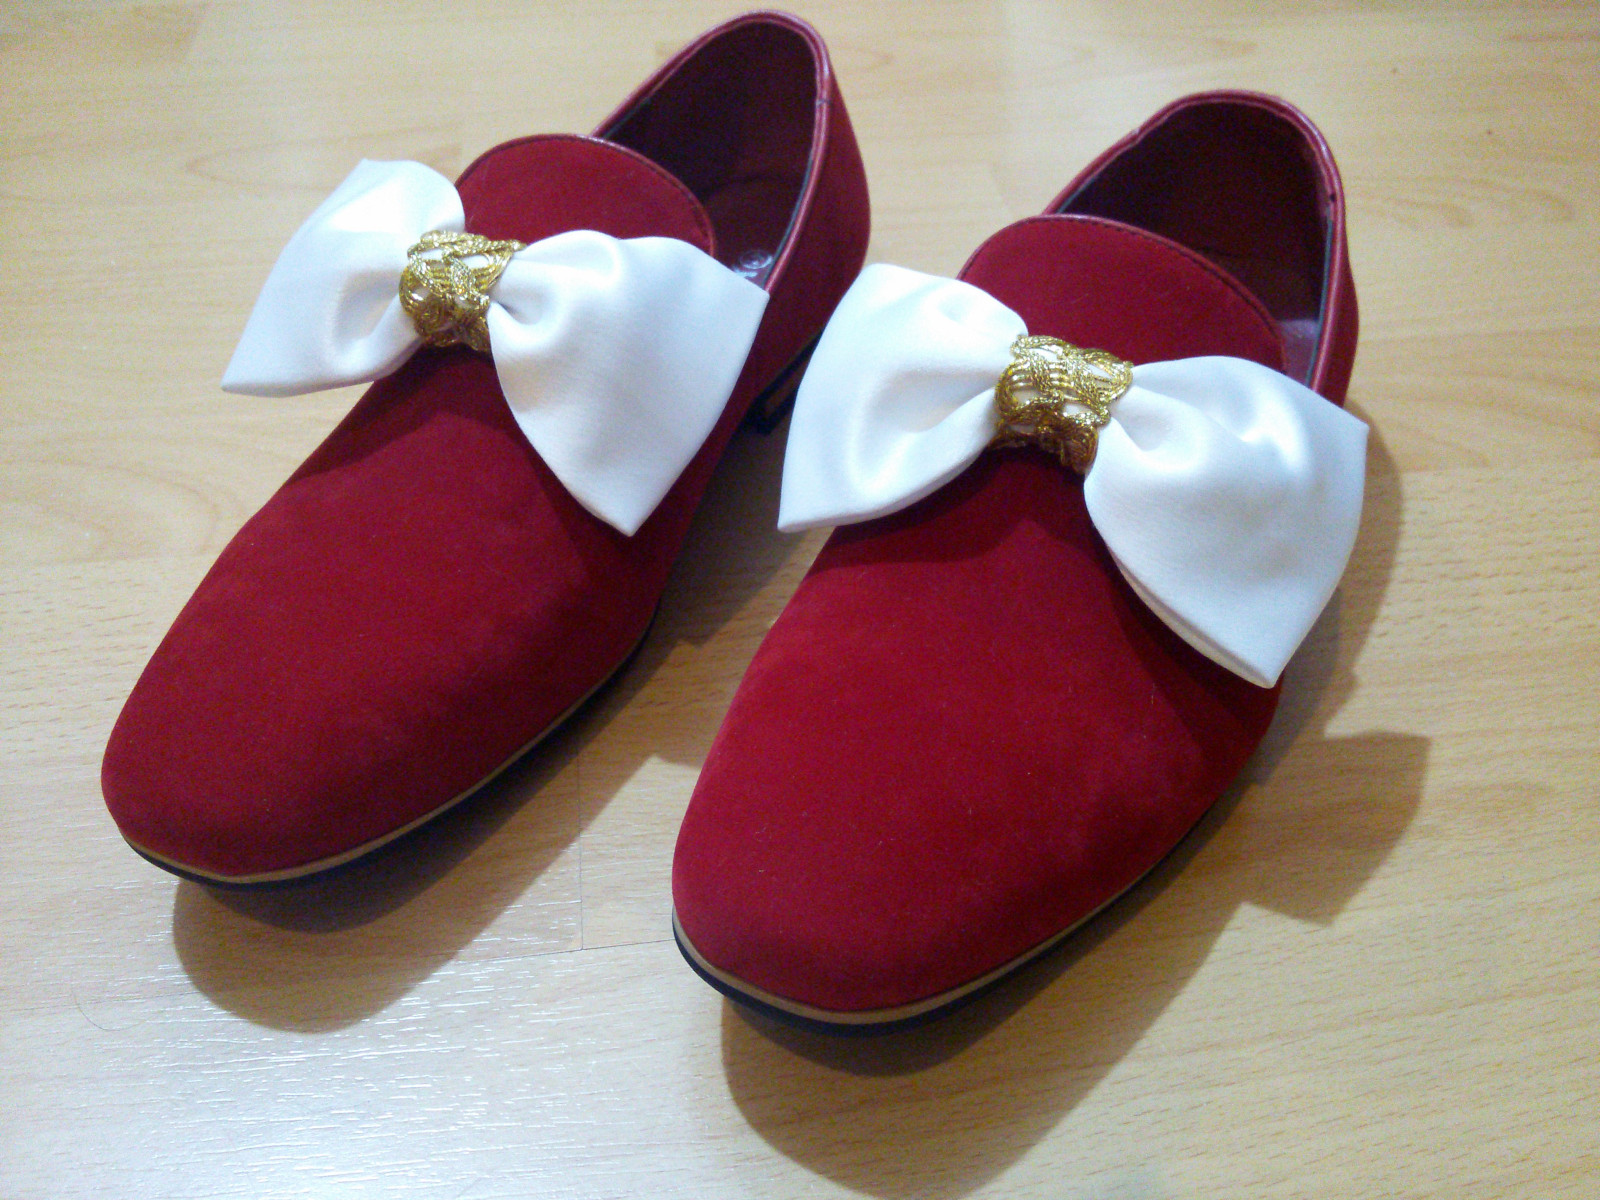 Bild: Schuhe aus rotem Velourleder, mit Schleifen aus weißem Satin und goldener Borte verziert.